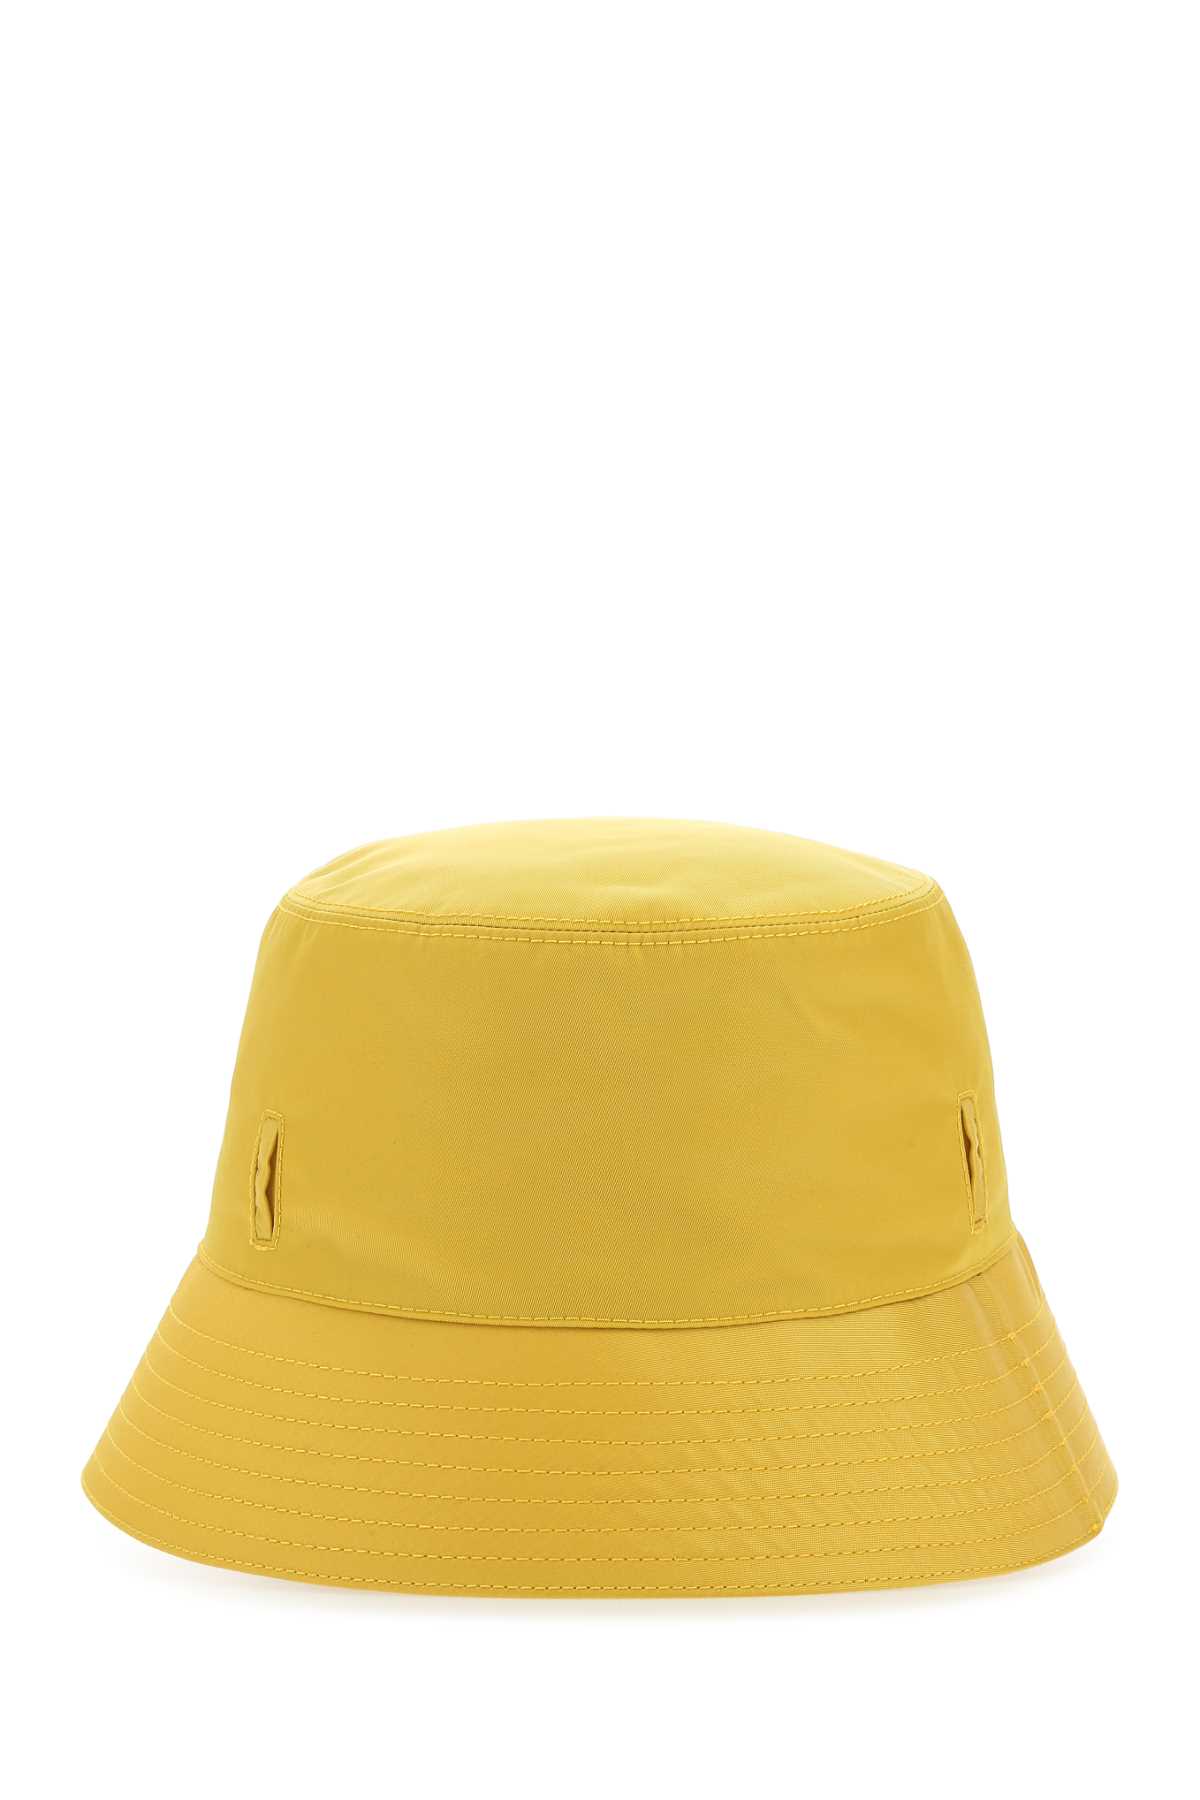 Prada Yellow Re-nylon Hat